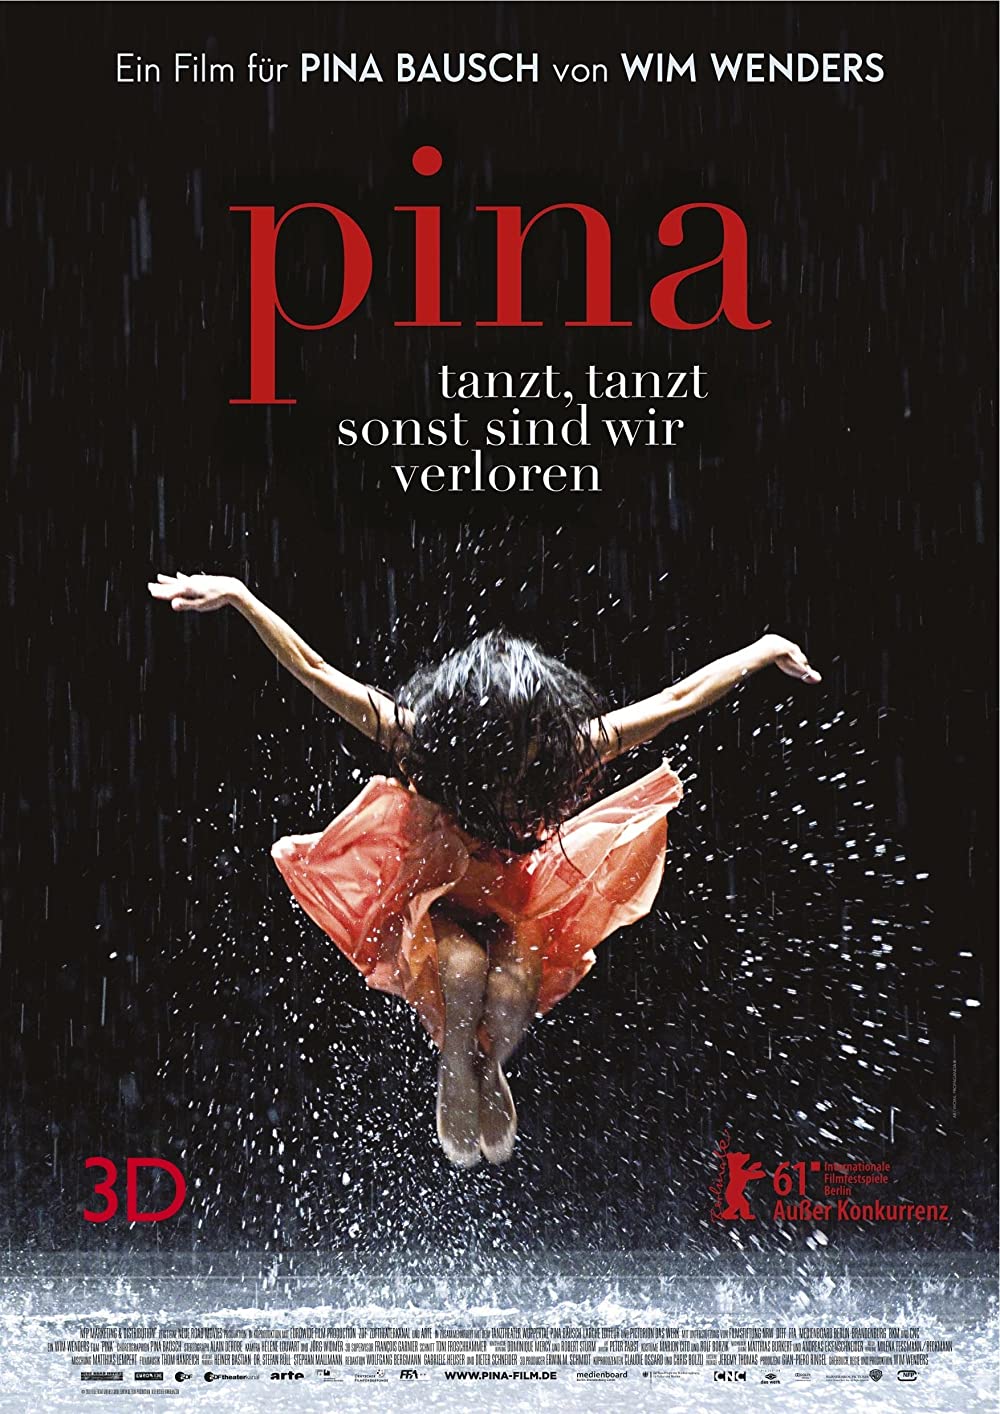 Filmbeschreibung zu Pina